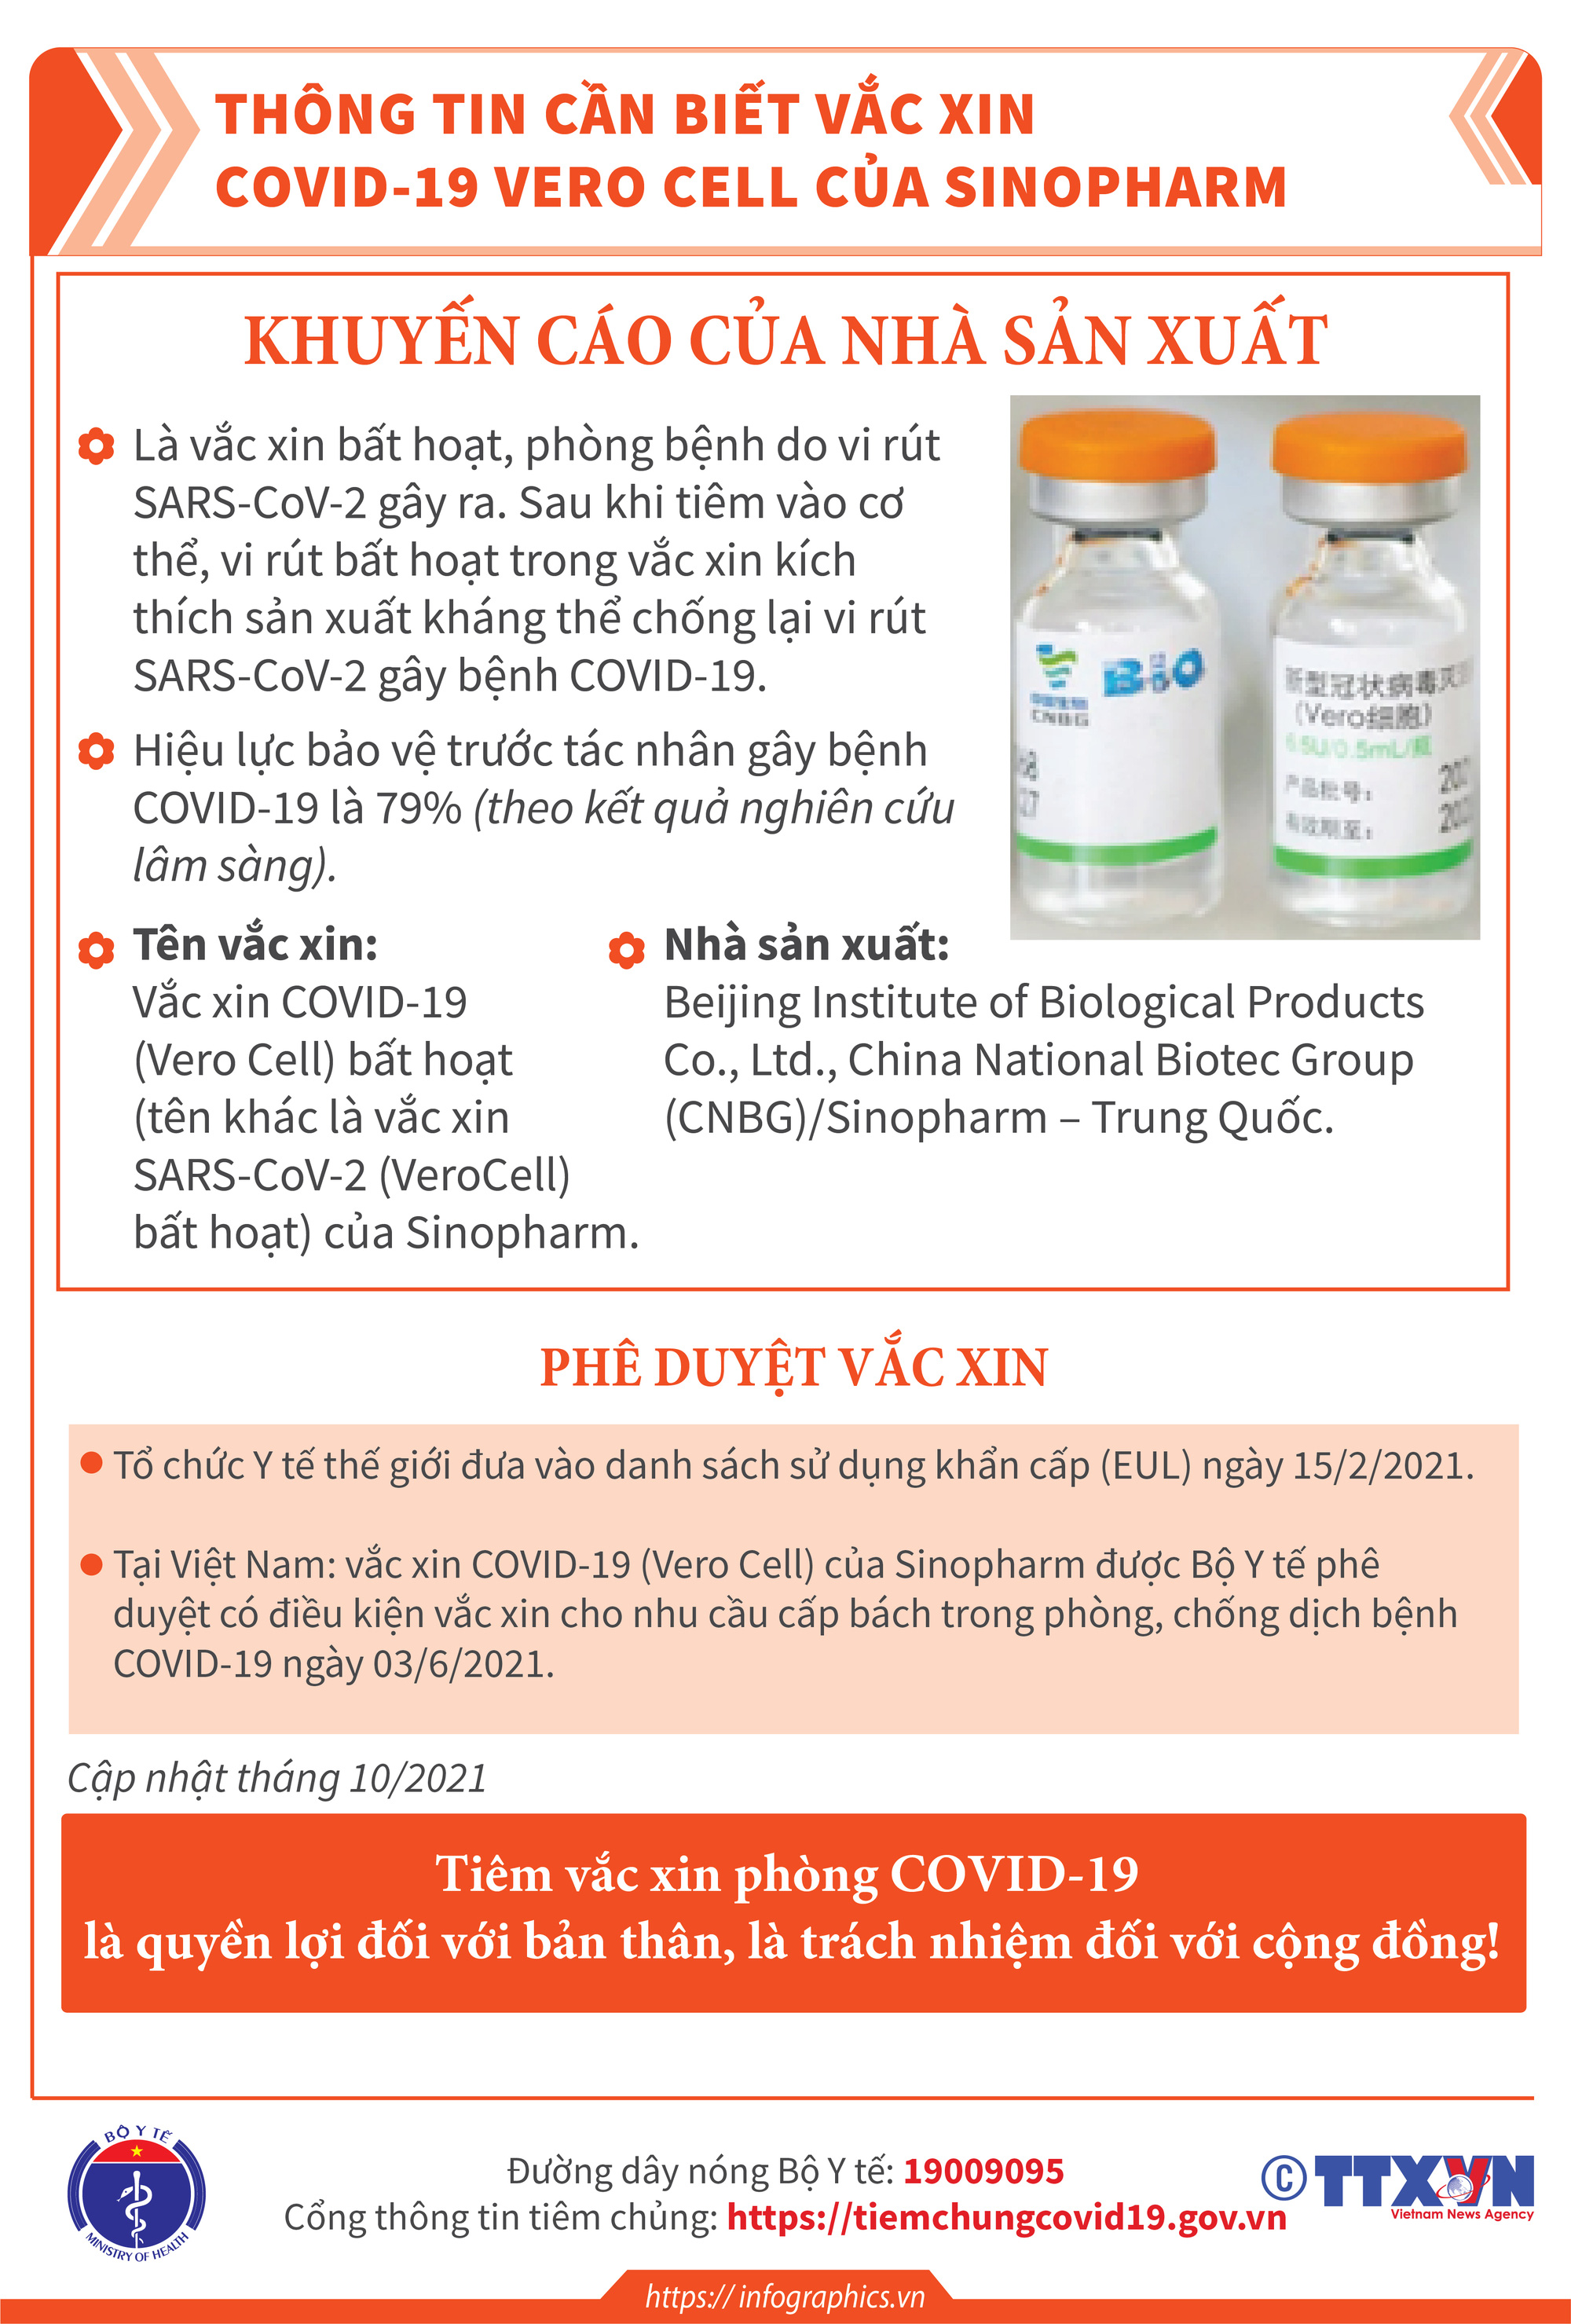 [Infographic] Thông tin cần biết về 03 loại vaccine phòng COVID-19: Vaccine Hayat-Vax, vaccine Verocell, vaccine Abdala  - Ảnh 4.